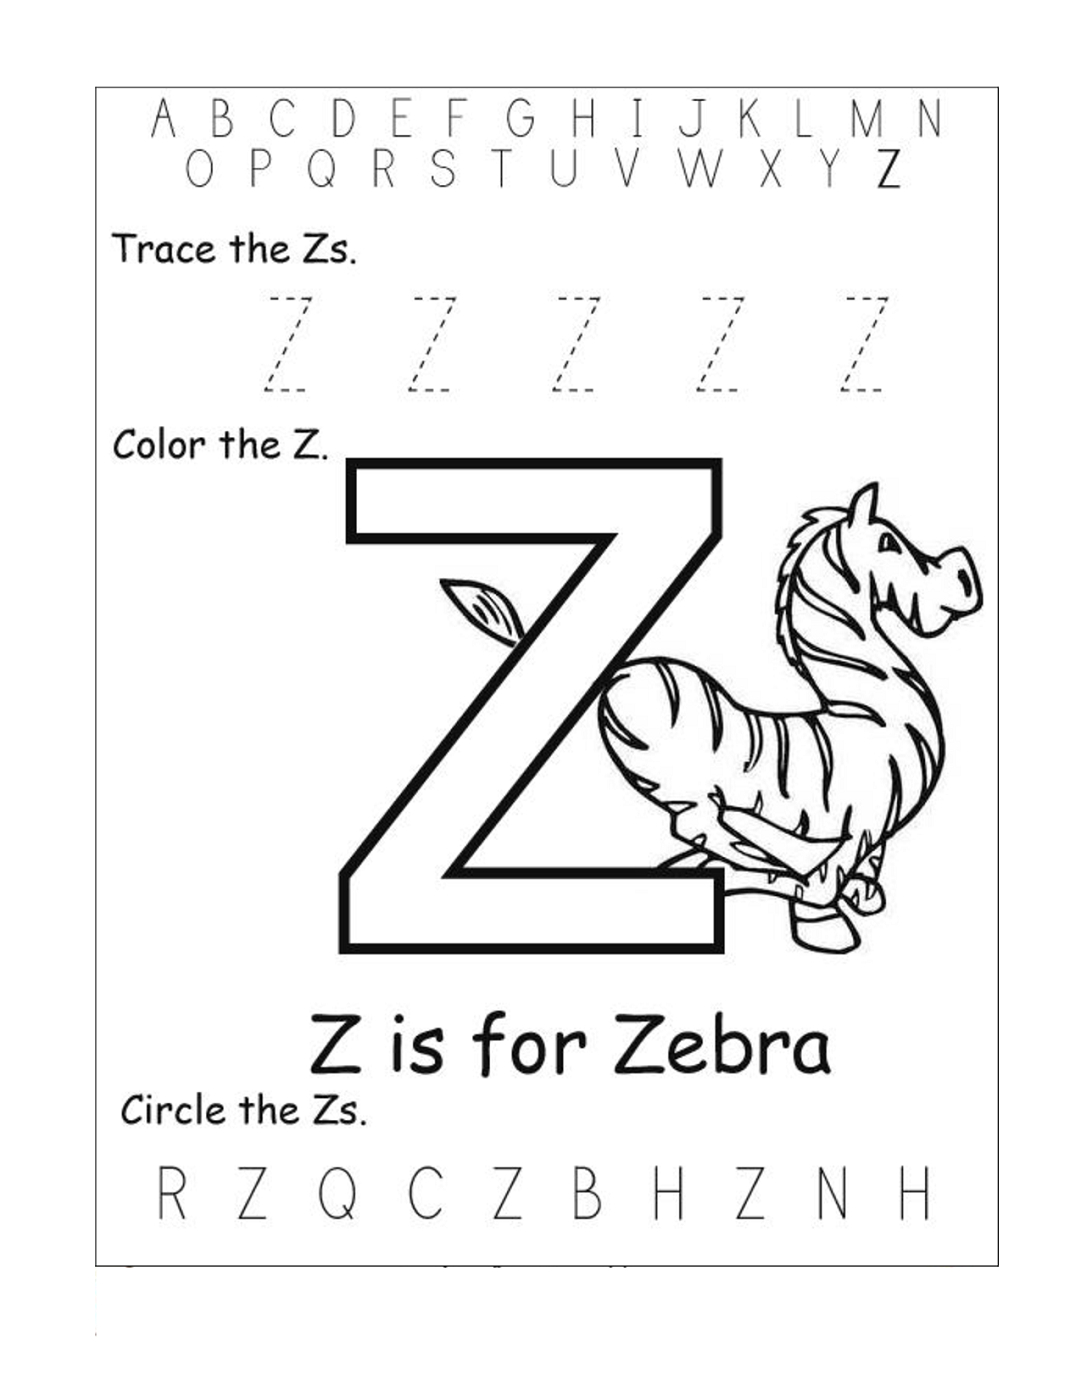 Letter Z Worksheets For Kindergarten | Activity Shelter throughout Tracing Letter Z Worksheets